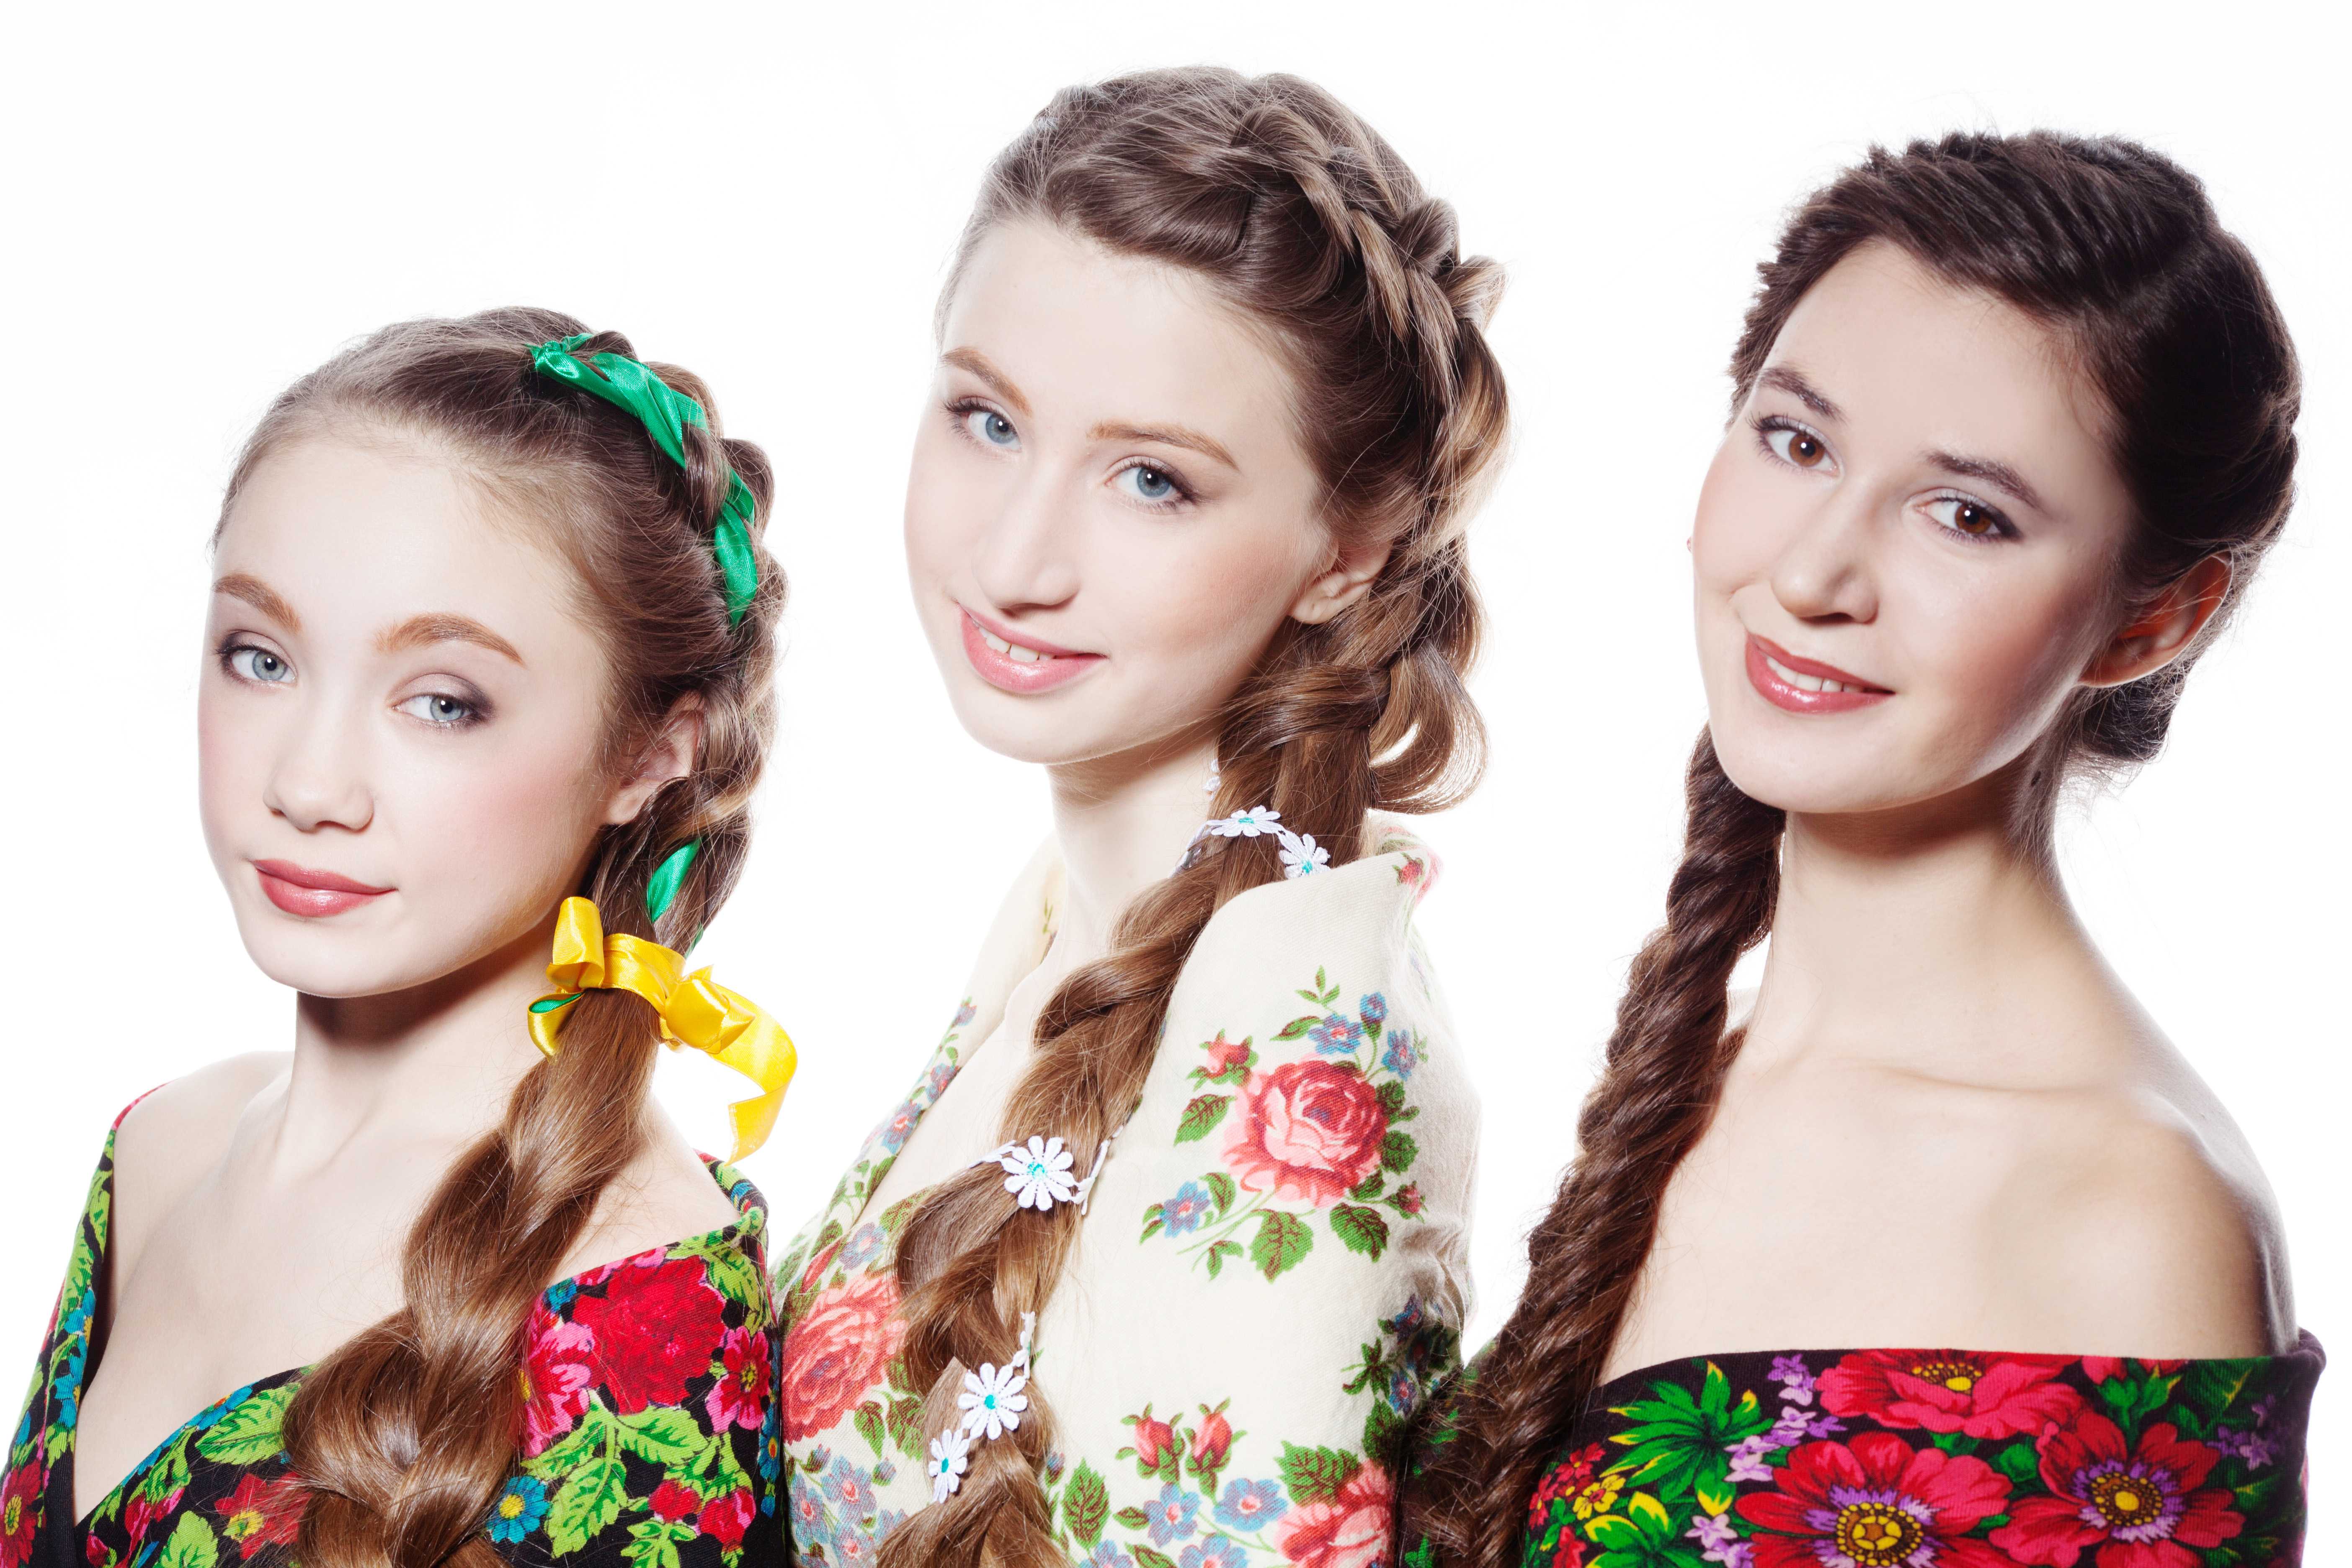 Русские народные прически: как выглядят женские славянские стрижки, фото красавиц с косой, видео, технология выполнения укладок в старинном стиле для танцев, кому они подходят, как сделать самостоятельно, плюсы и минусы, примеры знаменитостей